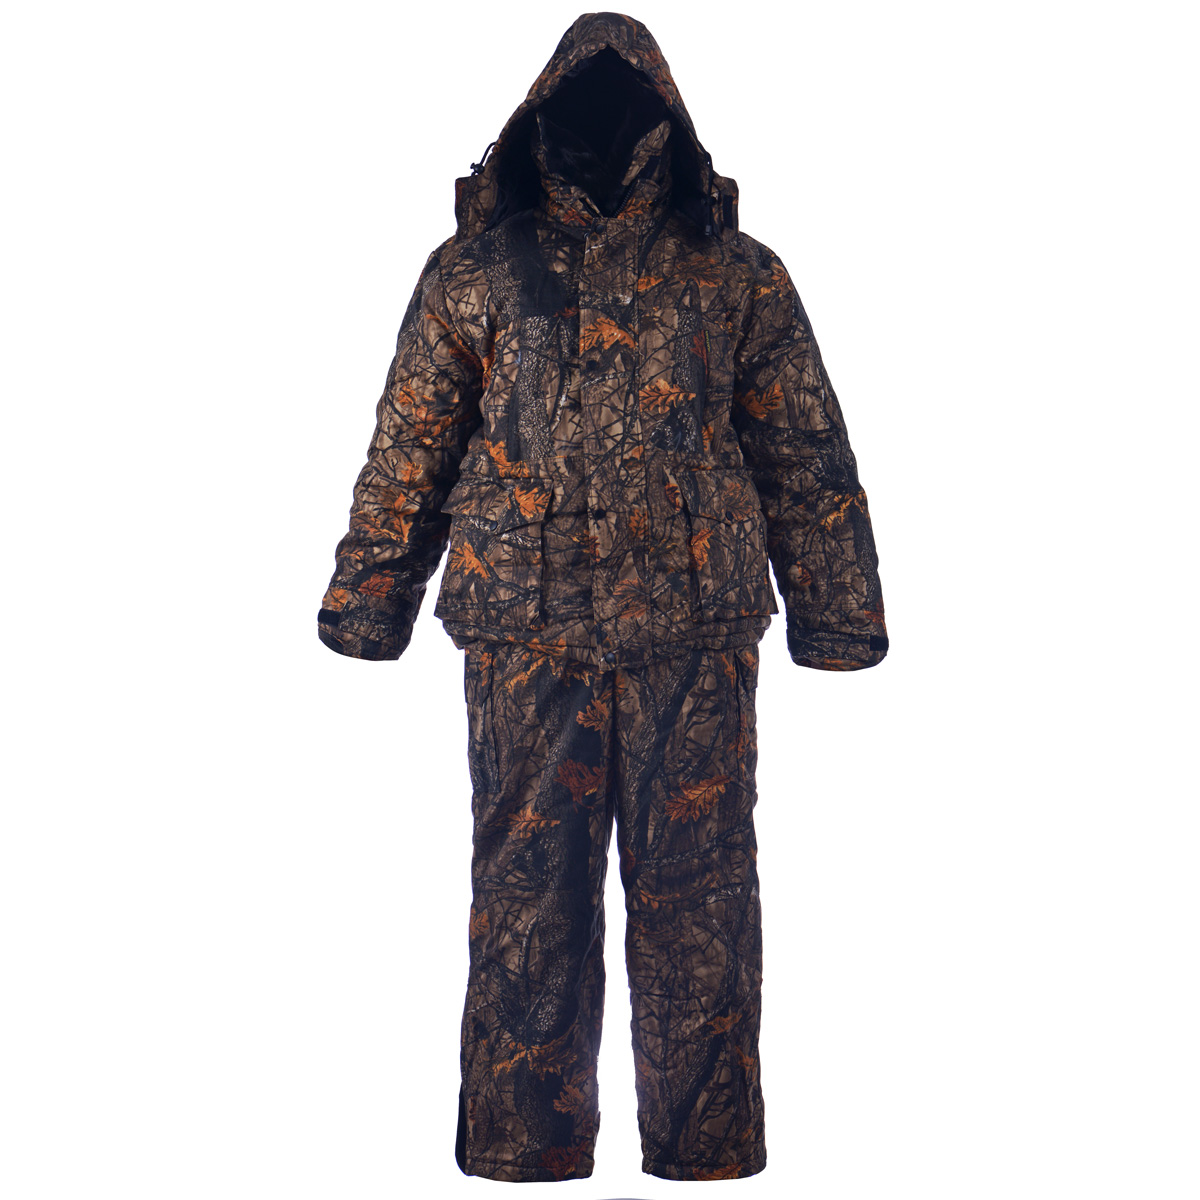 Комплект мужской Huntsman Буран-М: куртка, полукомбинезон, цвет: темный лес. Размер 56/58